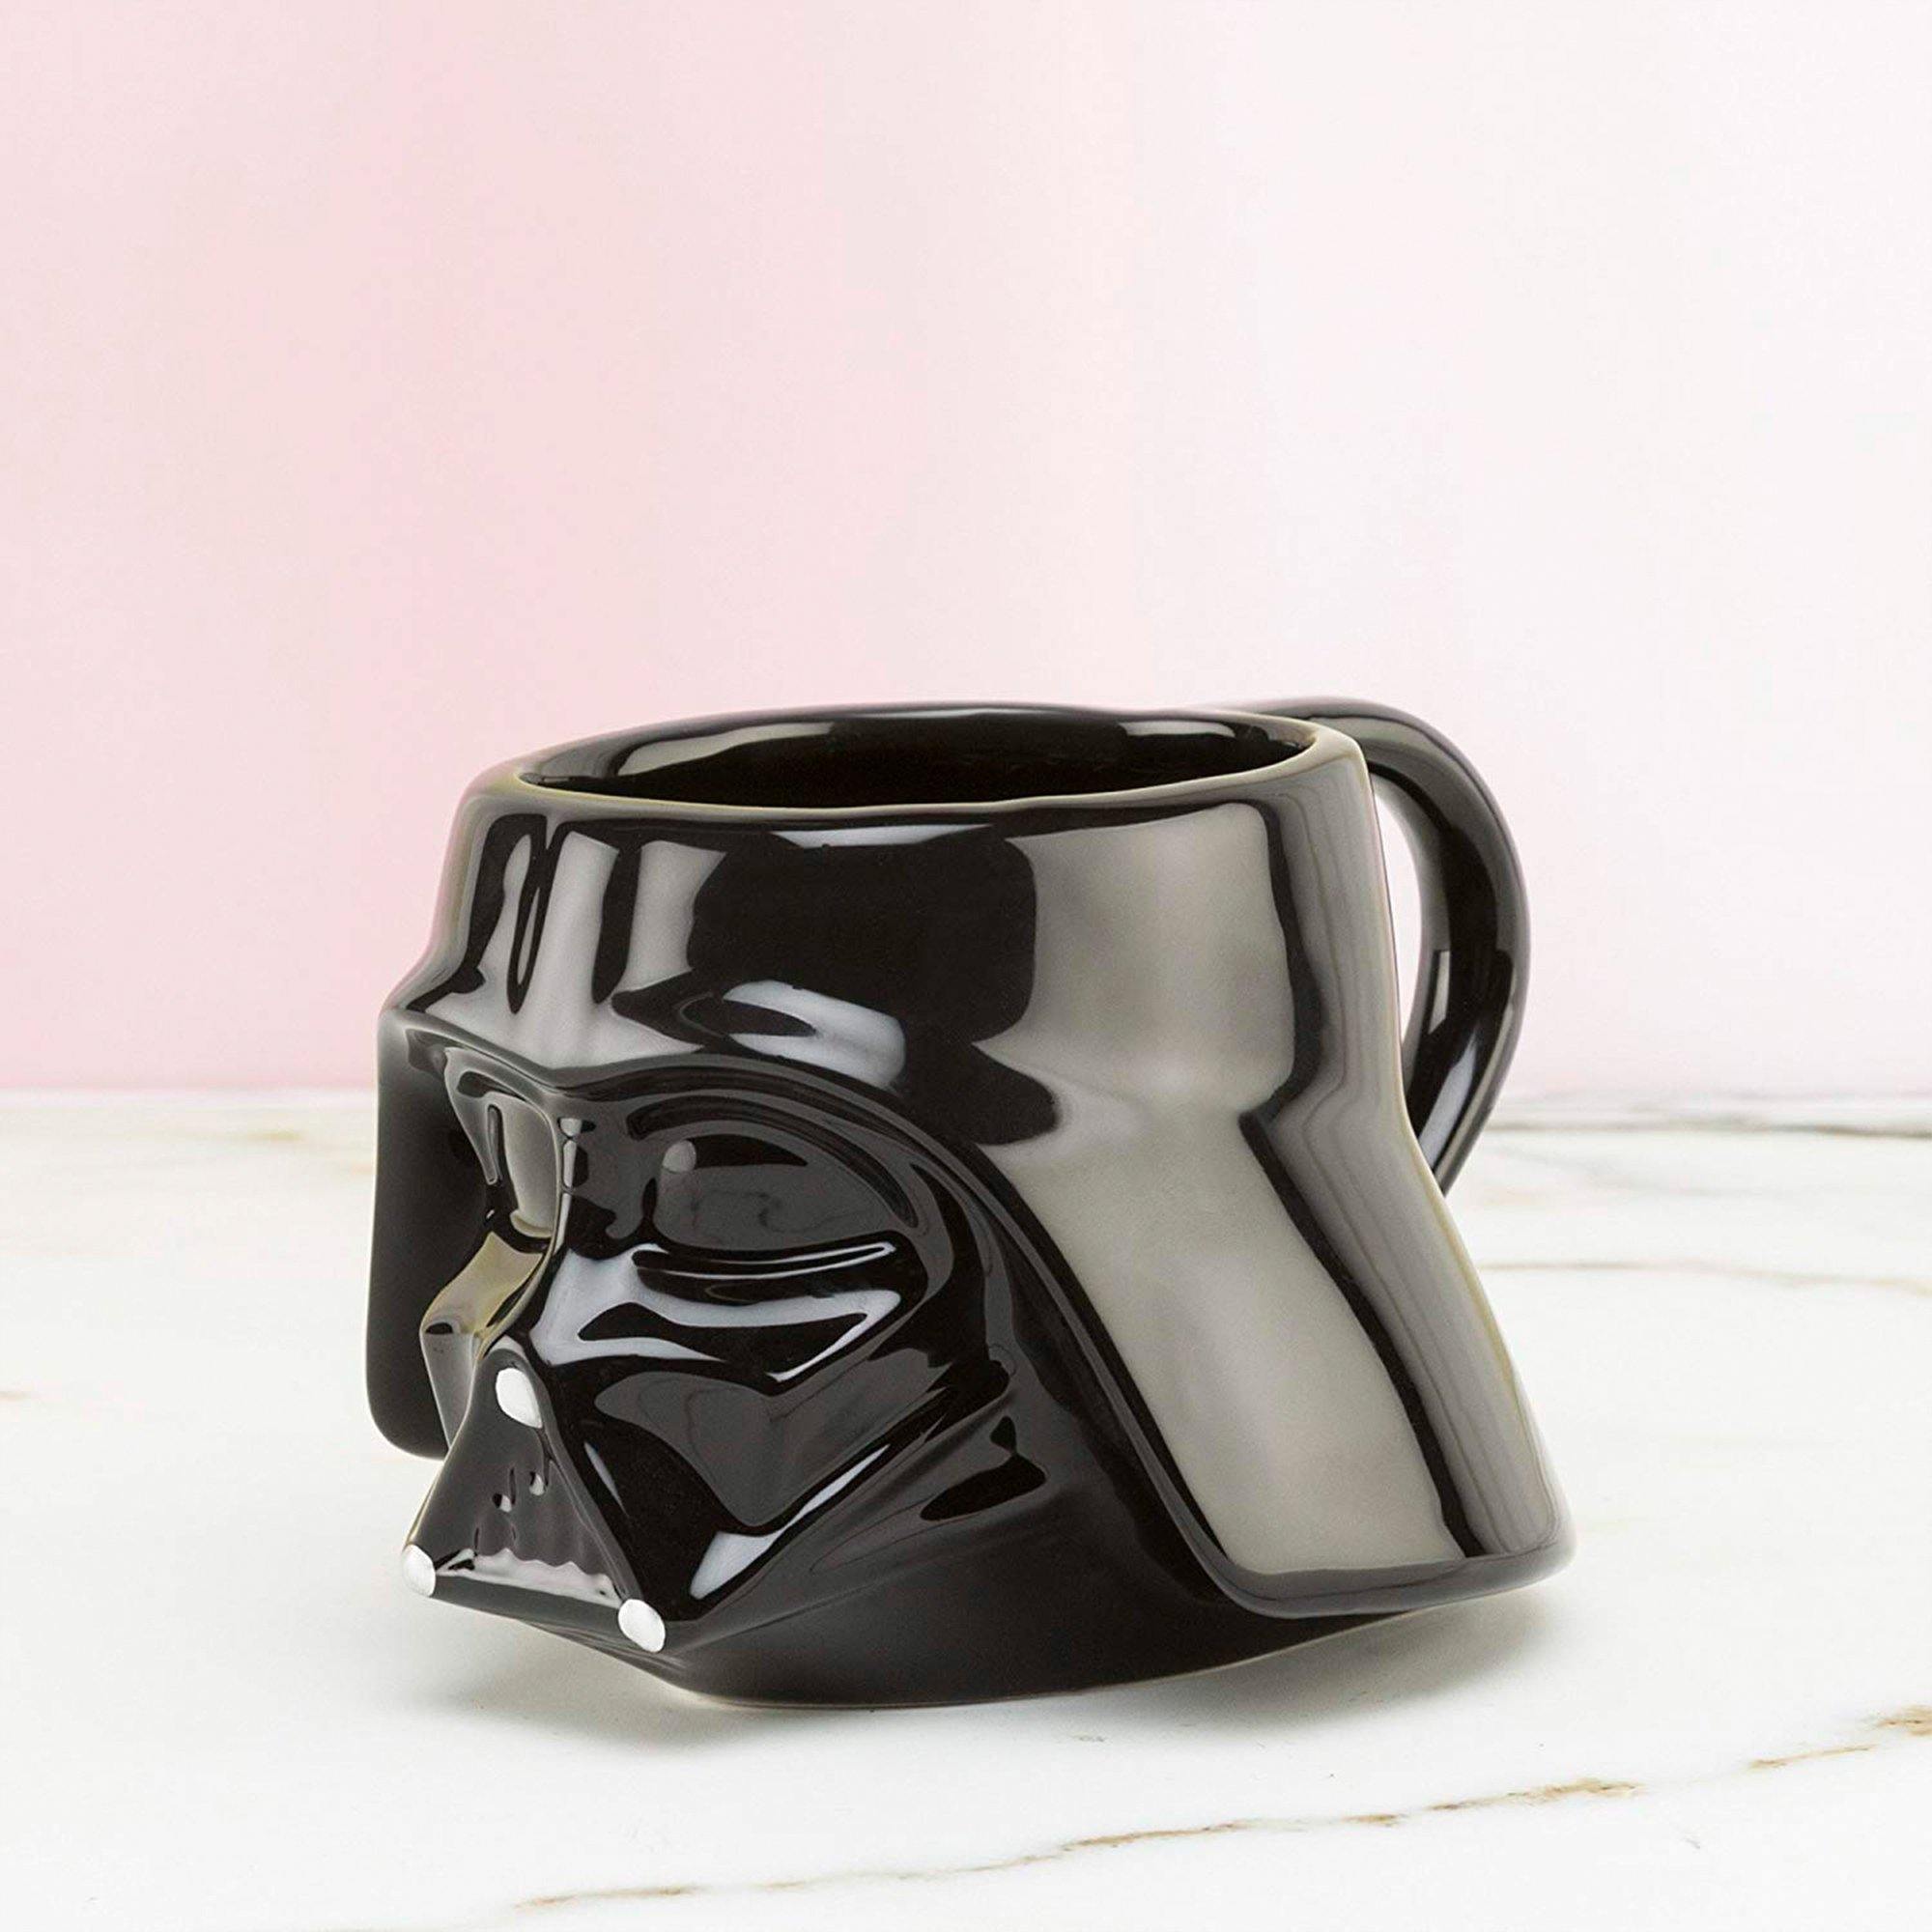 Taza Darth Vader Star Wars El té es fuerte en está taza